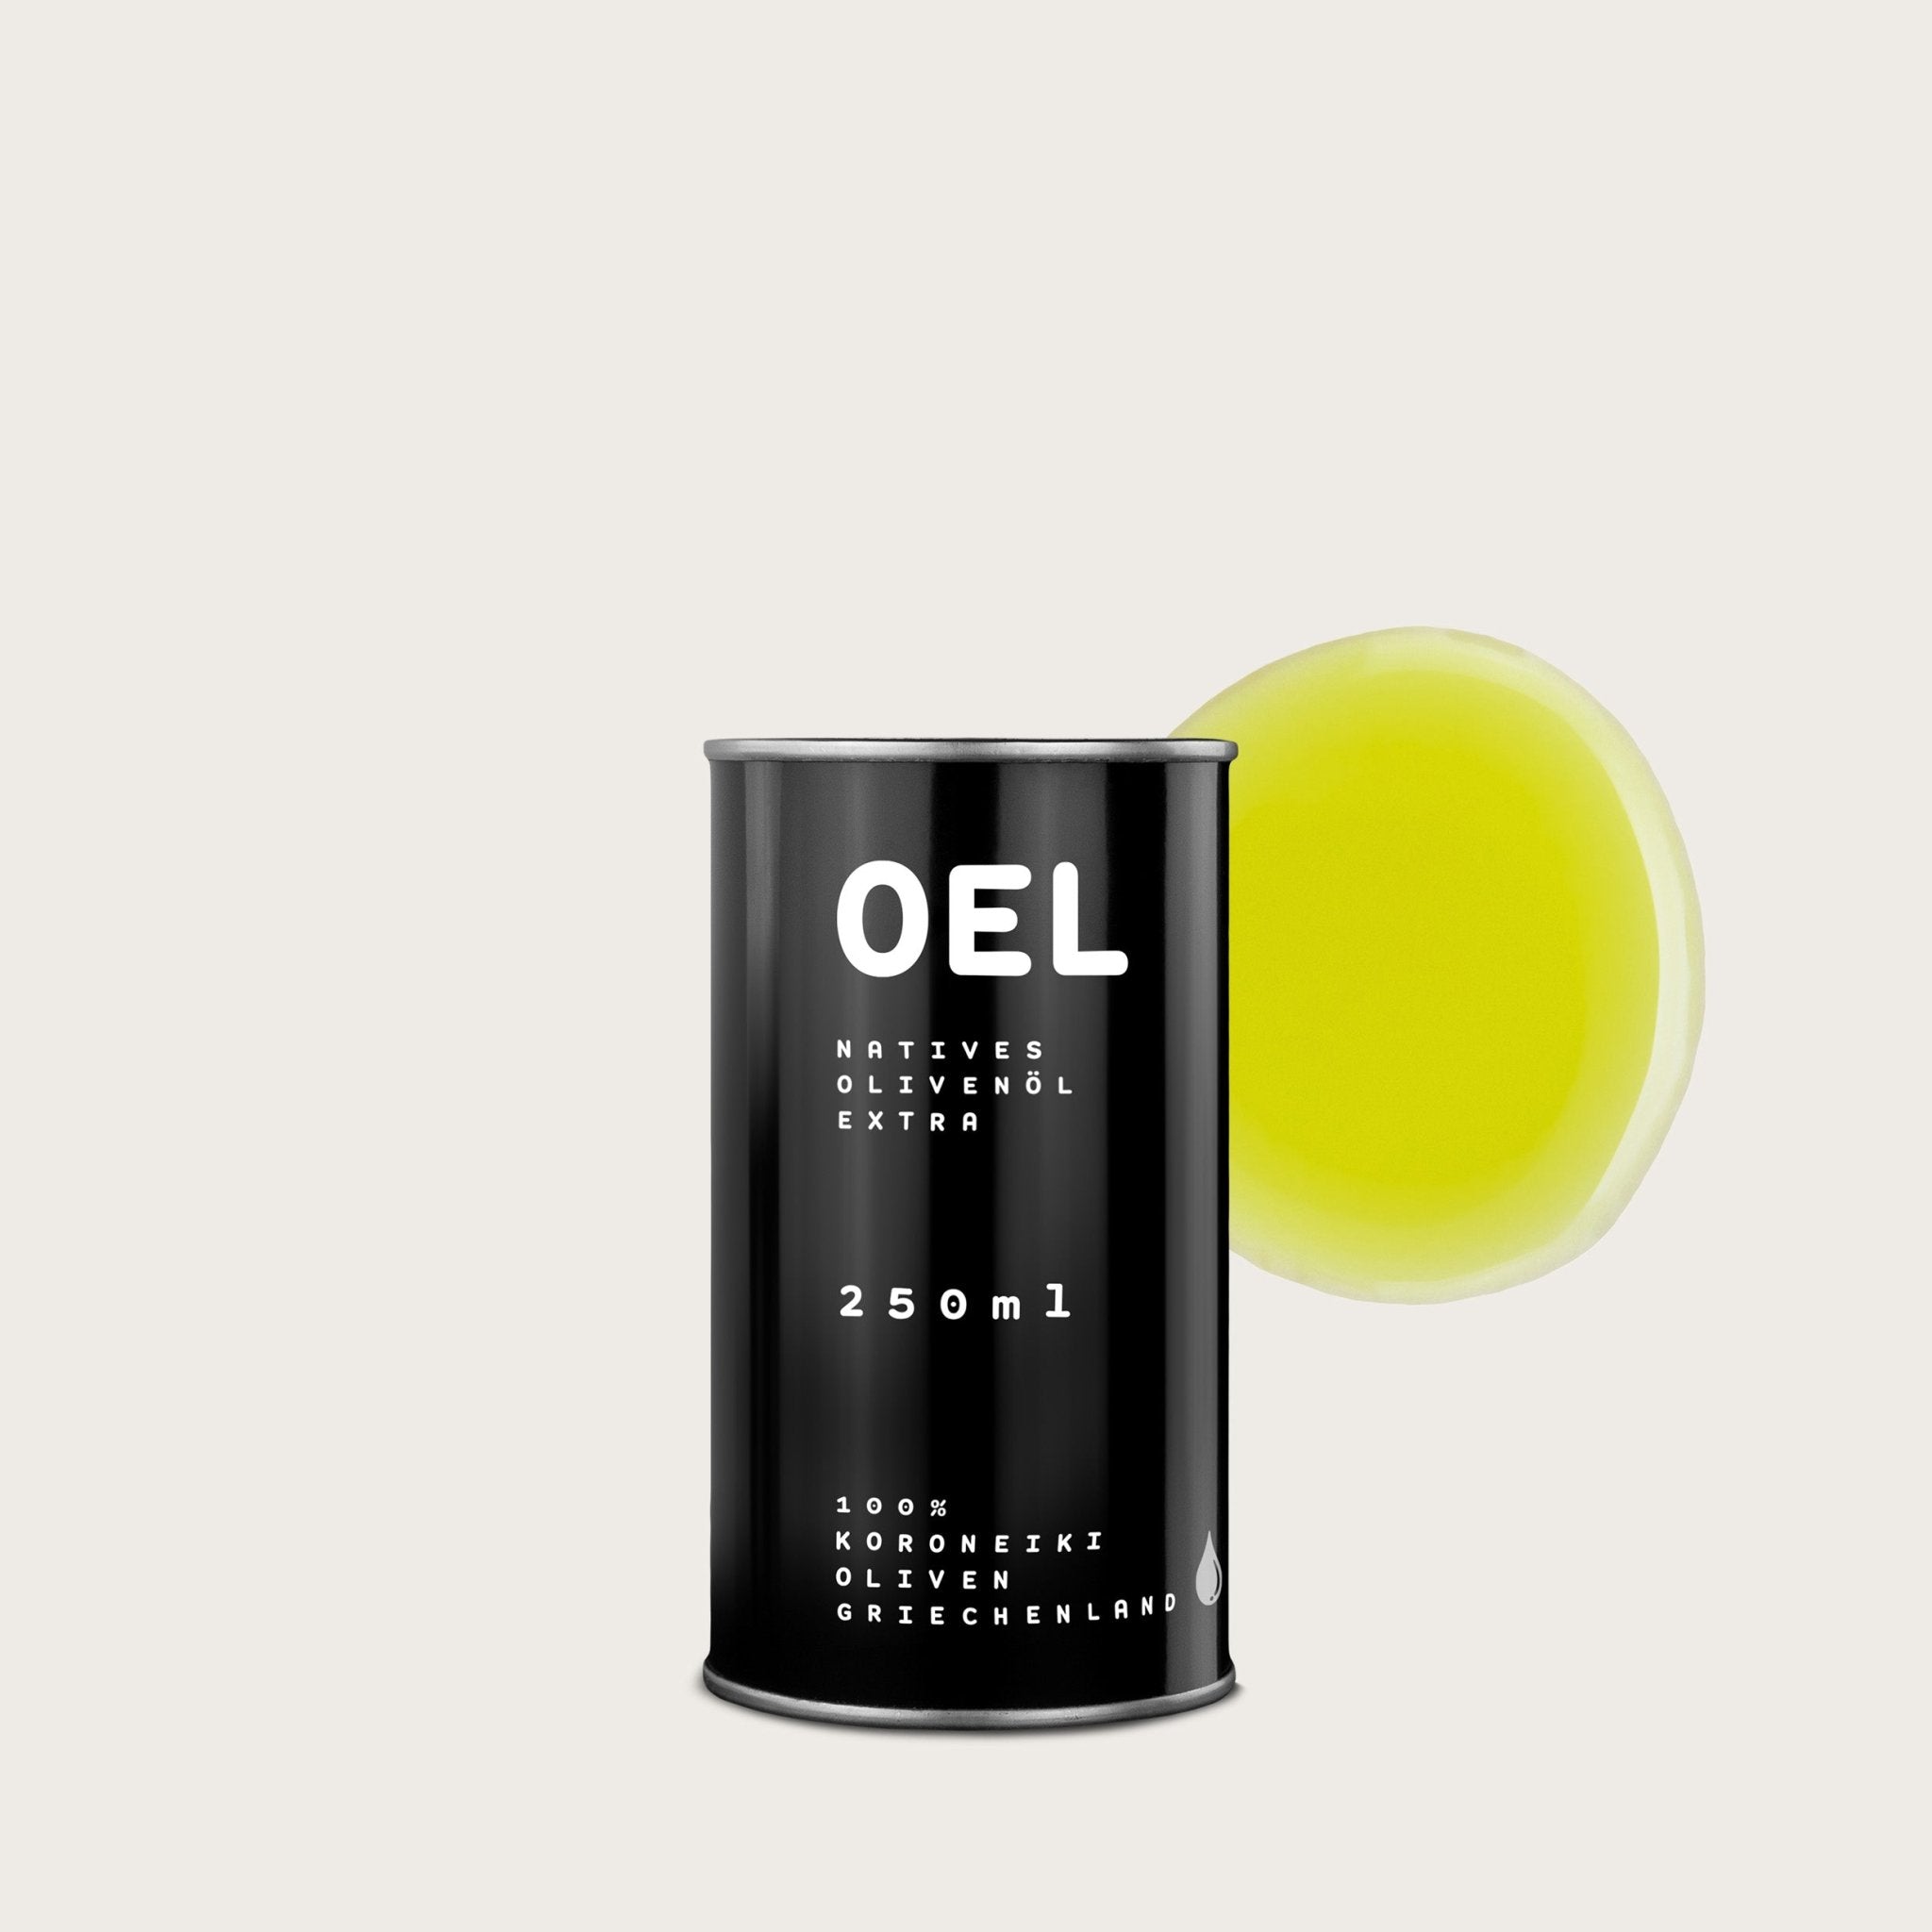 OEL 250 ml - Bio Natives Olivenöl Extra aus Griechenland - OEL - Griechische Produkte und Olivenöl - Bestandsartikel red. MWST (7%) - OEL Olivenprodukte